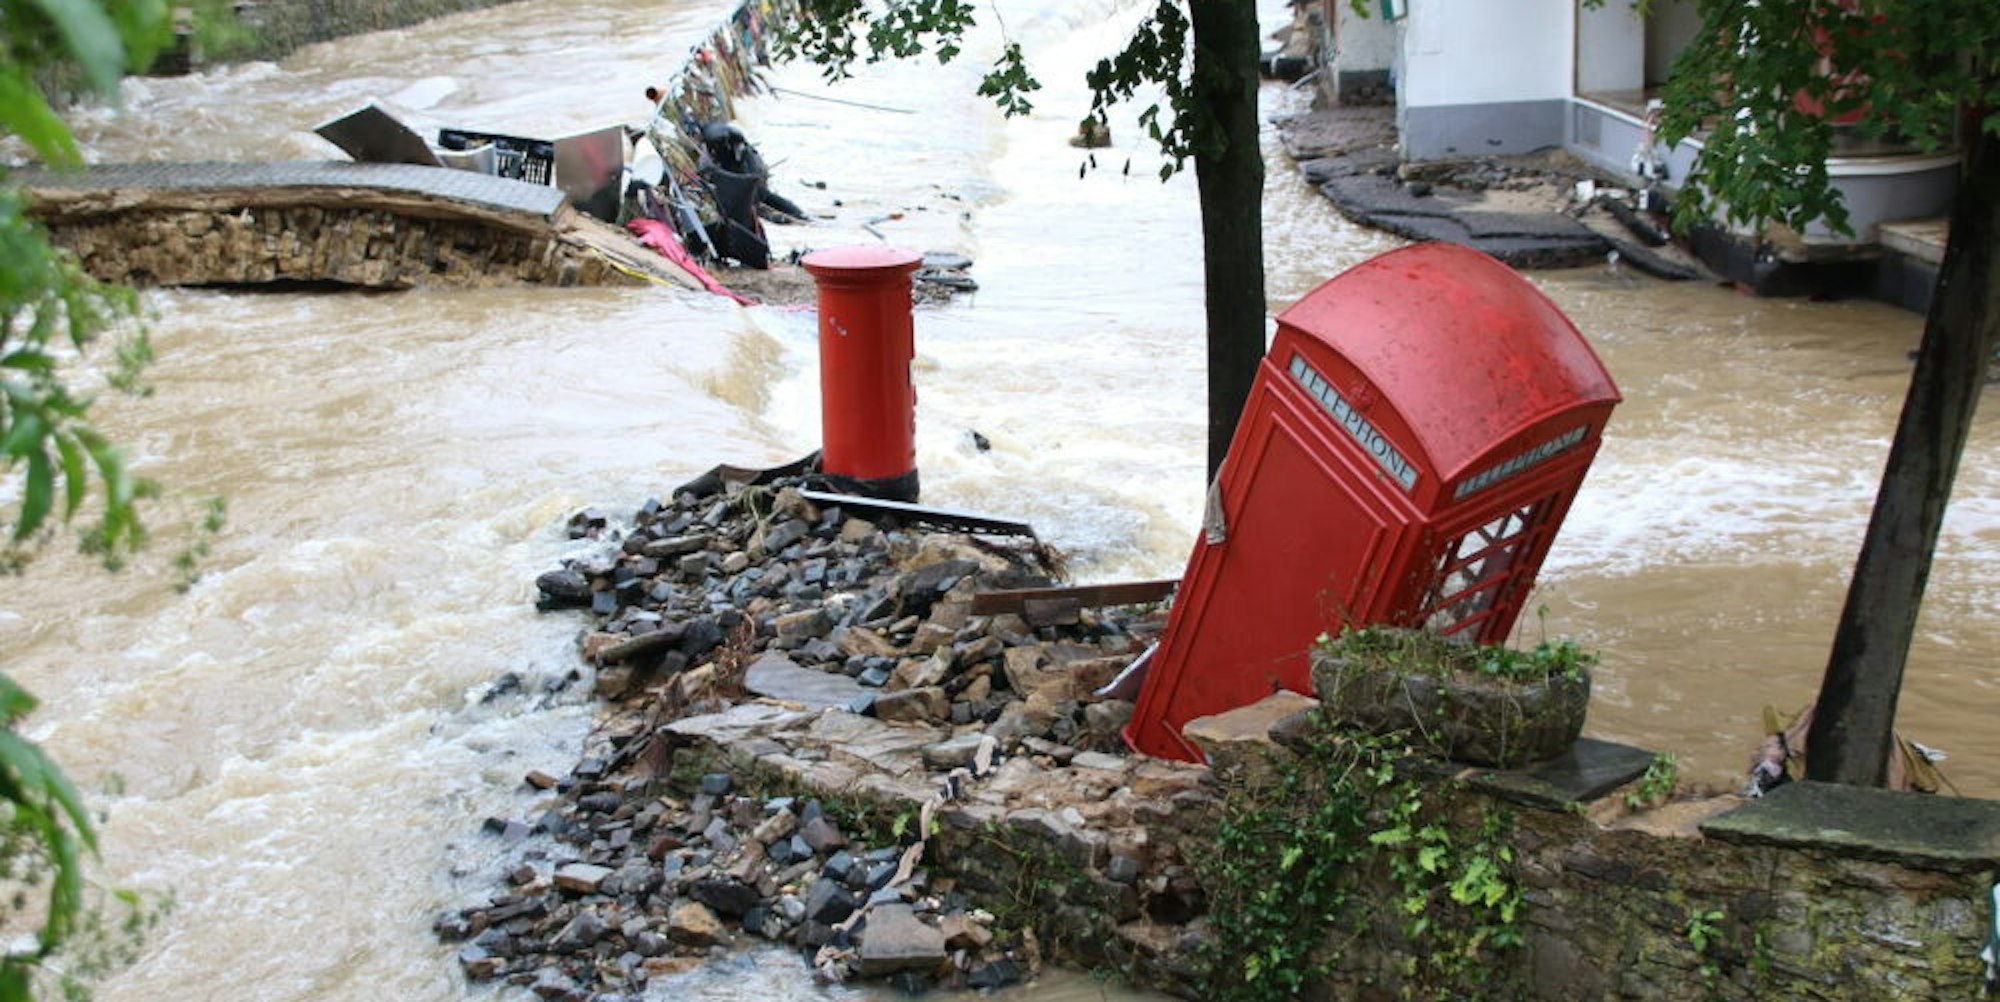 Verhindern kann man Hochwasserereignisse, hier in Bad Münstereifel, laut Experten zwar nicht, aber die Schäden eindämmen.